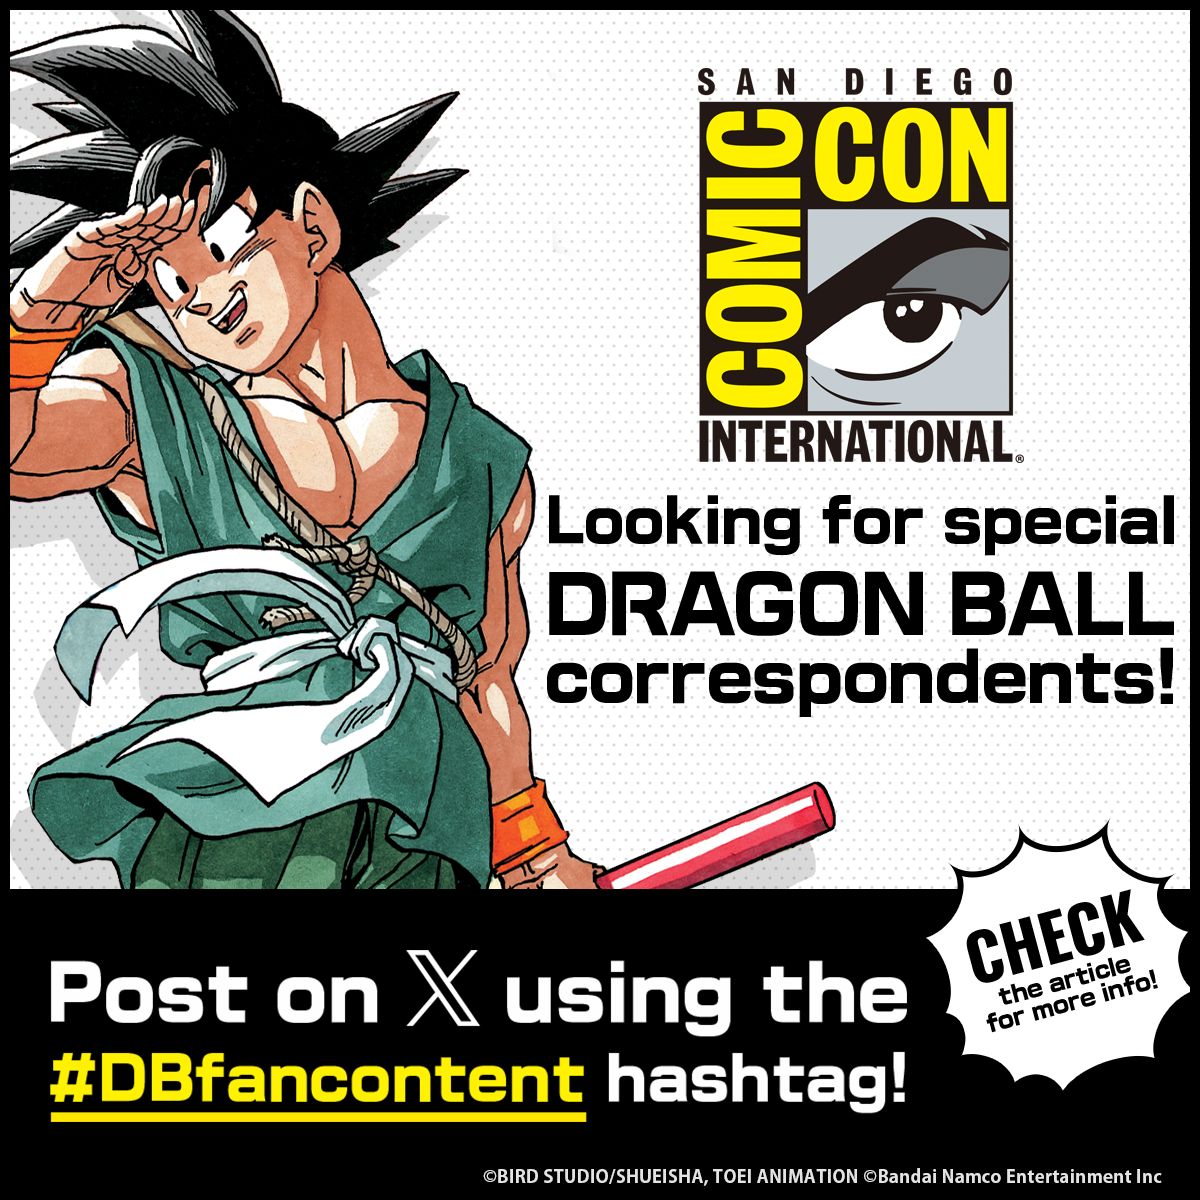 À la recherche de correspondants spéciaux pour le Comic-Con International : San Diego ! Postez simplement sur X en utilisant le hashtag # DBfancontent pour participer !